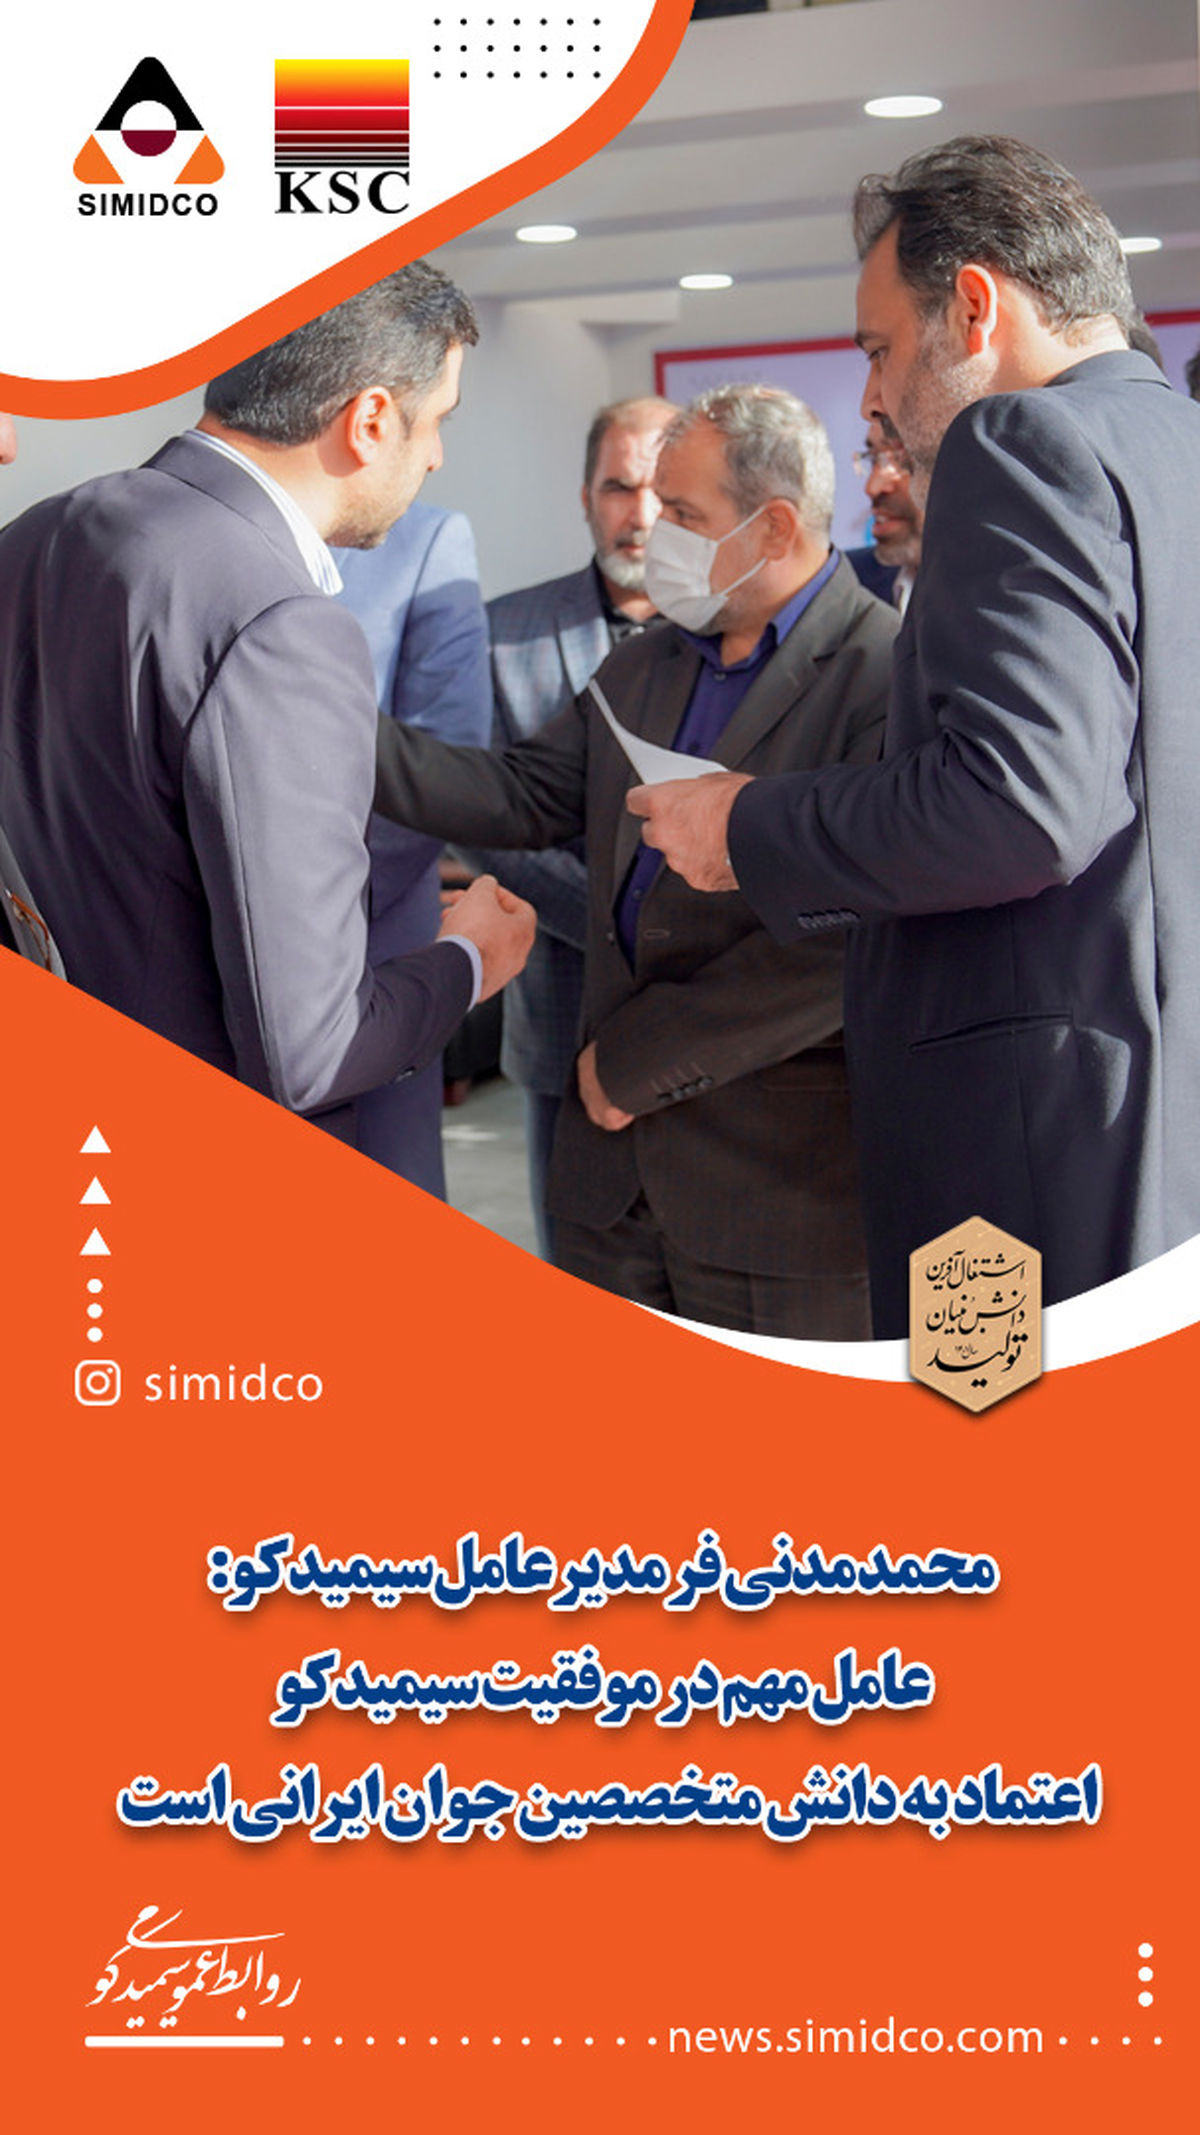 عامل مهم در موفقیت سیمیدکو اعتماد به دانش متخصصین جوان ایرانی است